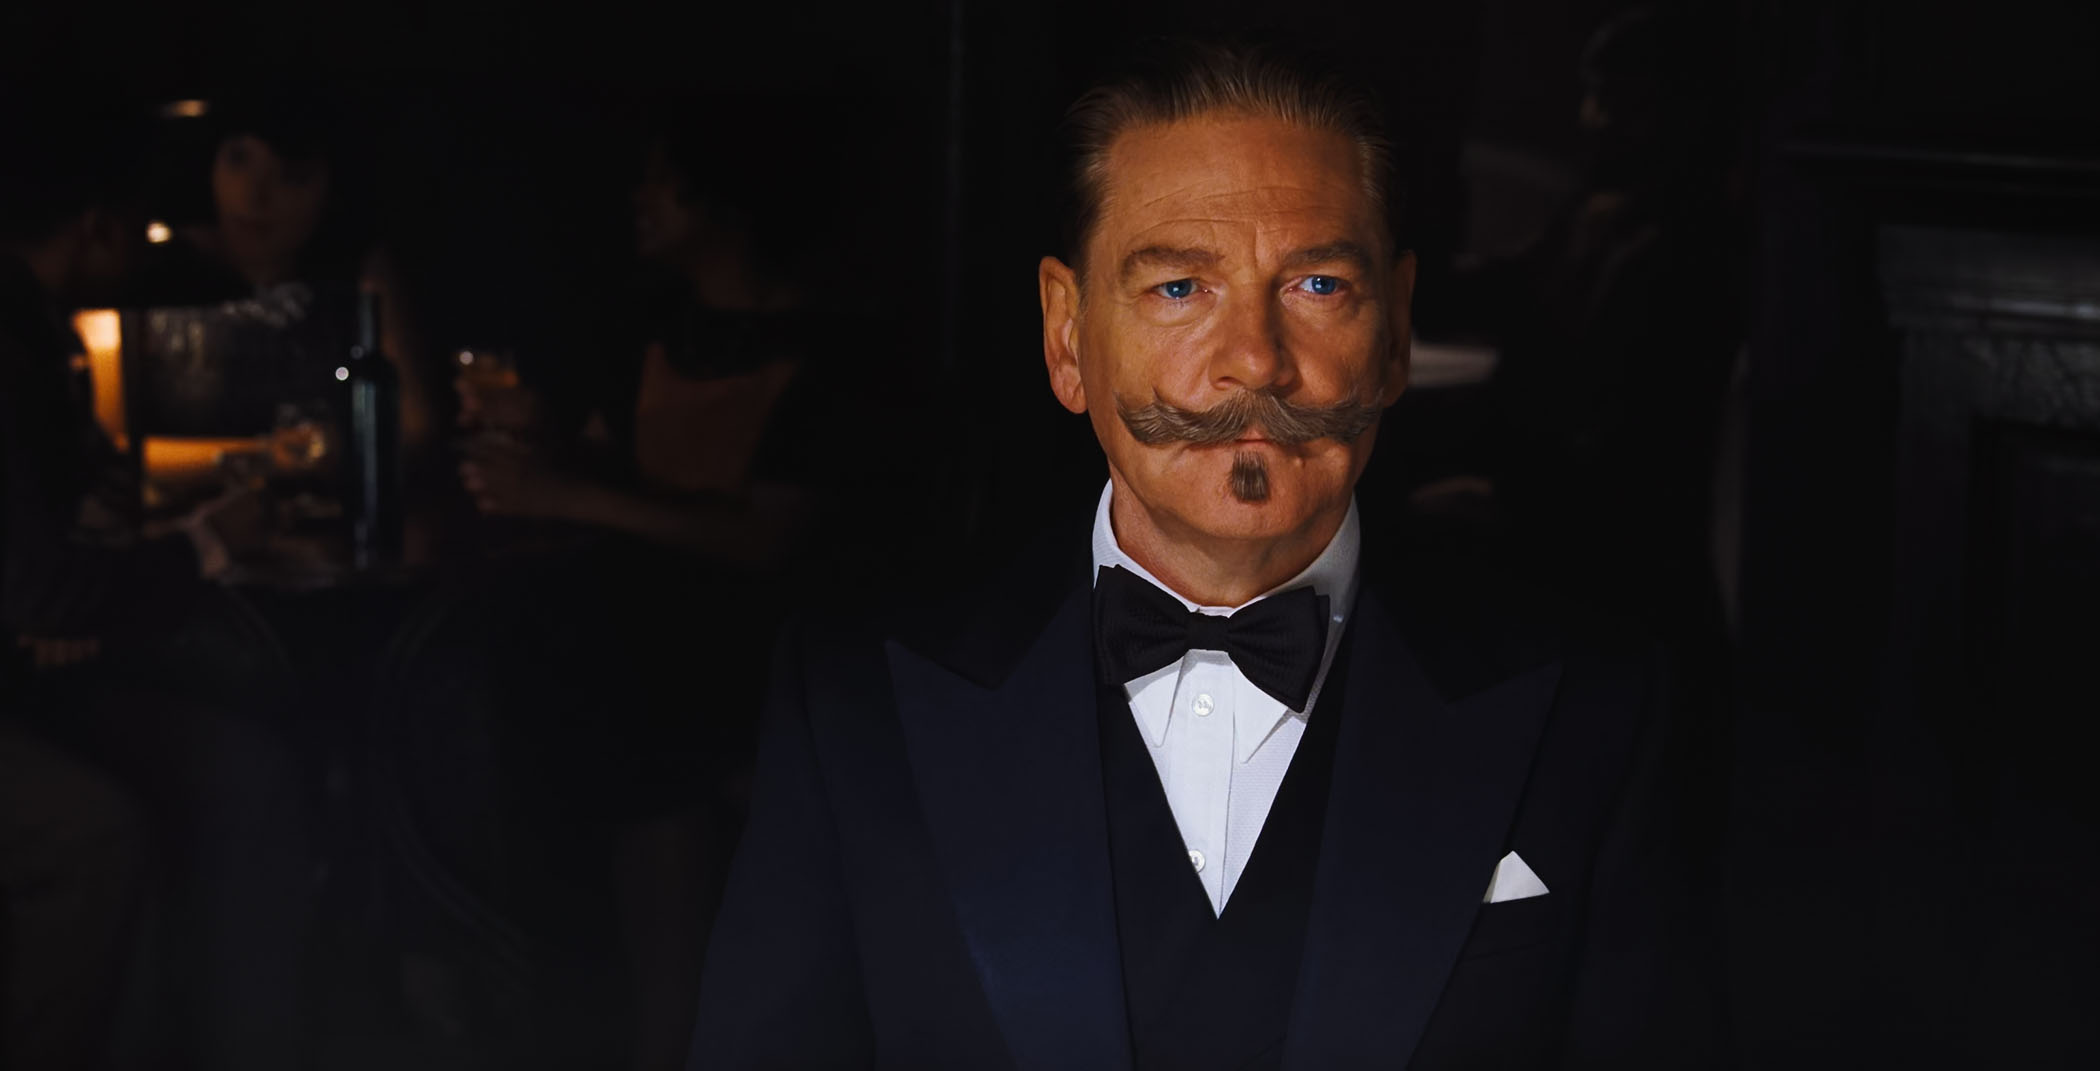 Nhân vật thám tử râu quặp Hercule Poirot hiện lên đầy thú vị dưới kỹ năng diễn xuất tài tình của Kenneth Branagh